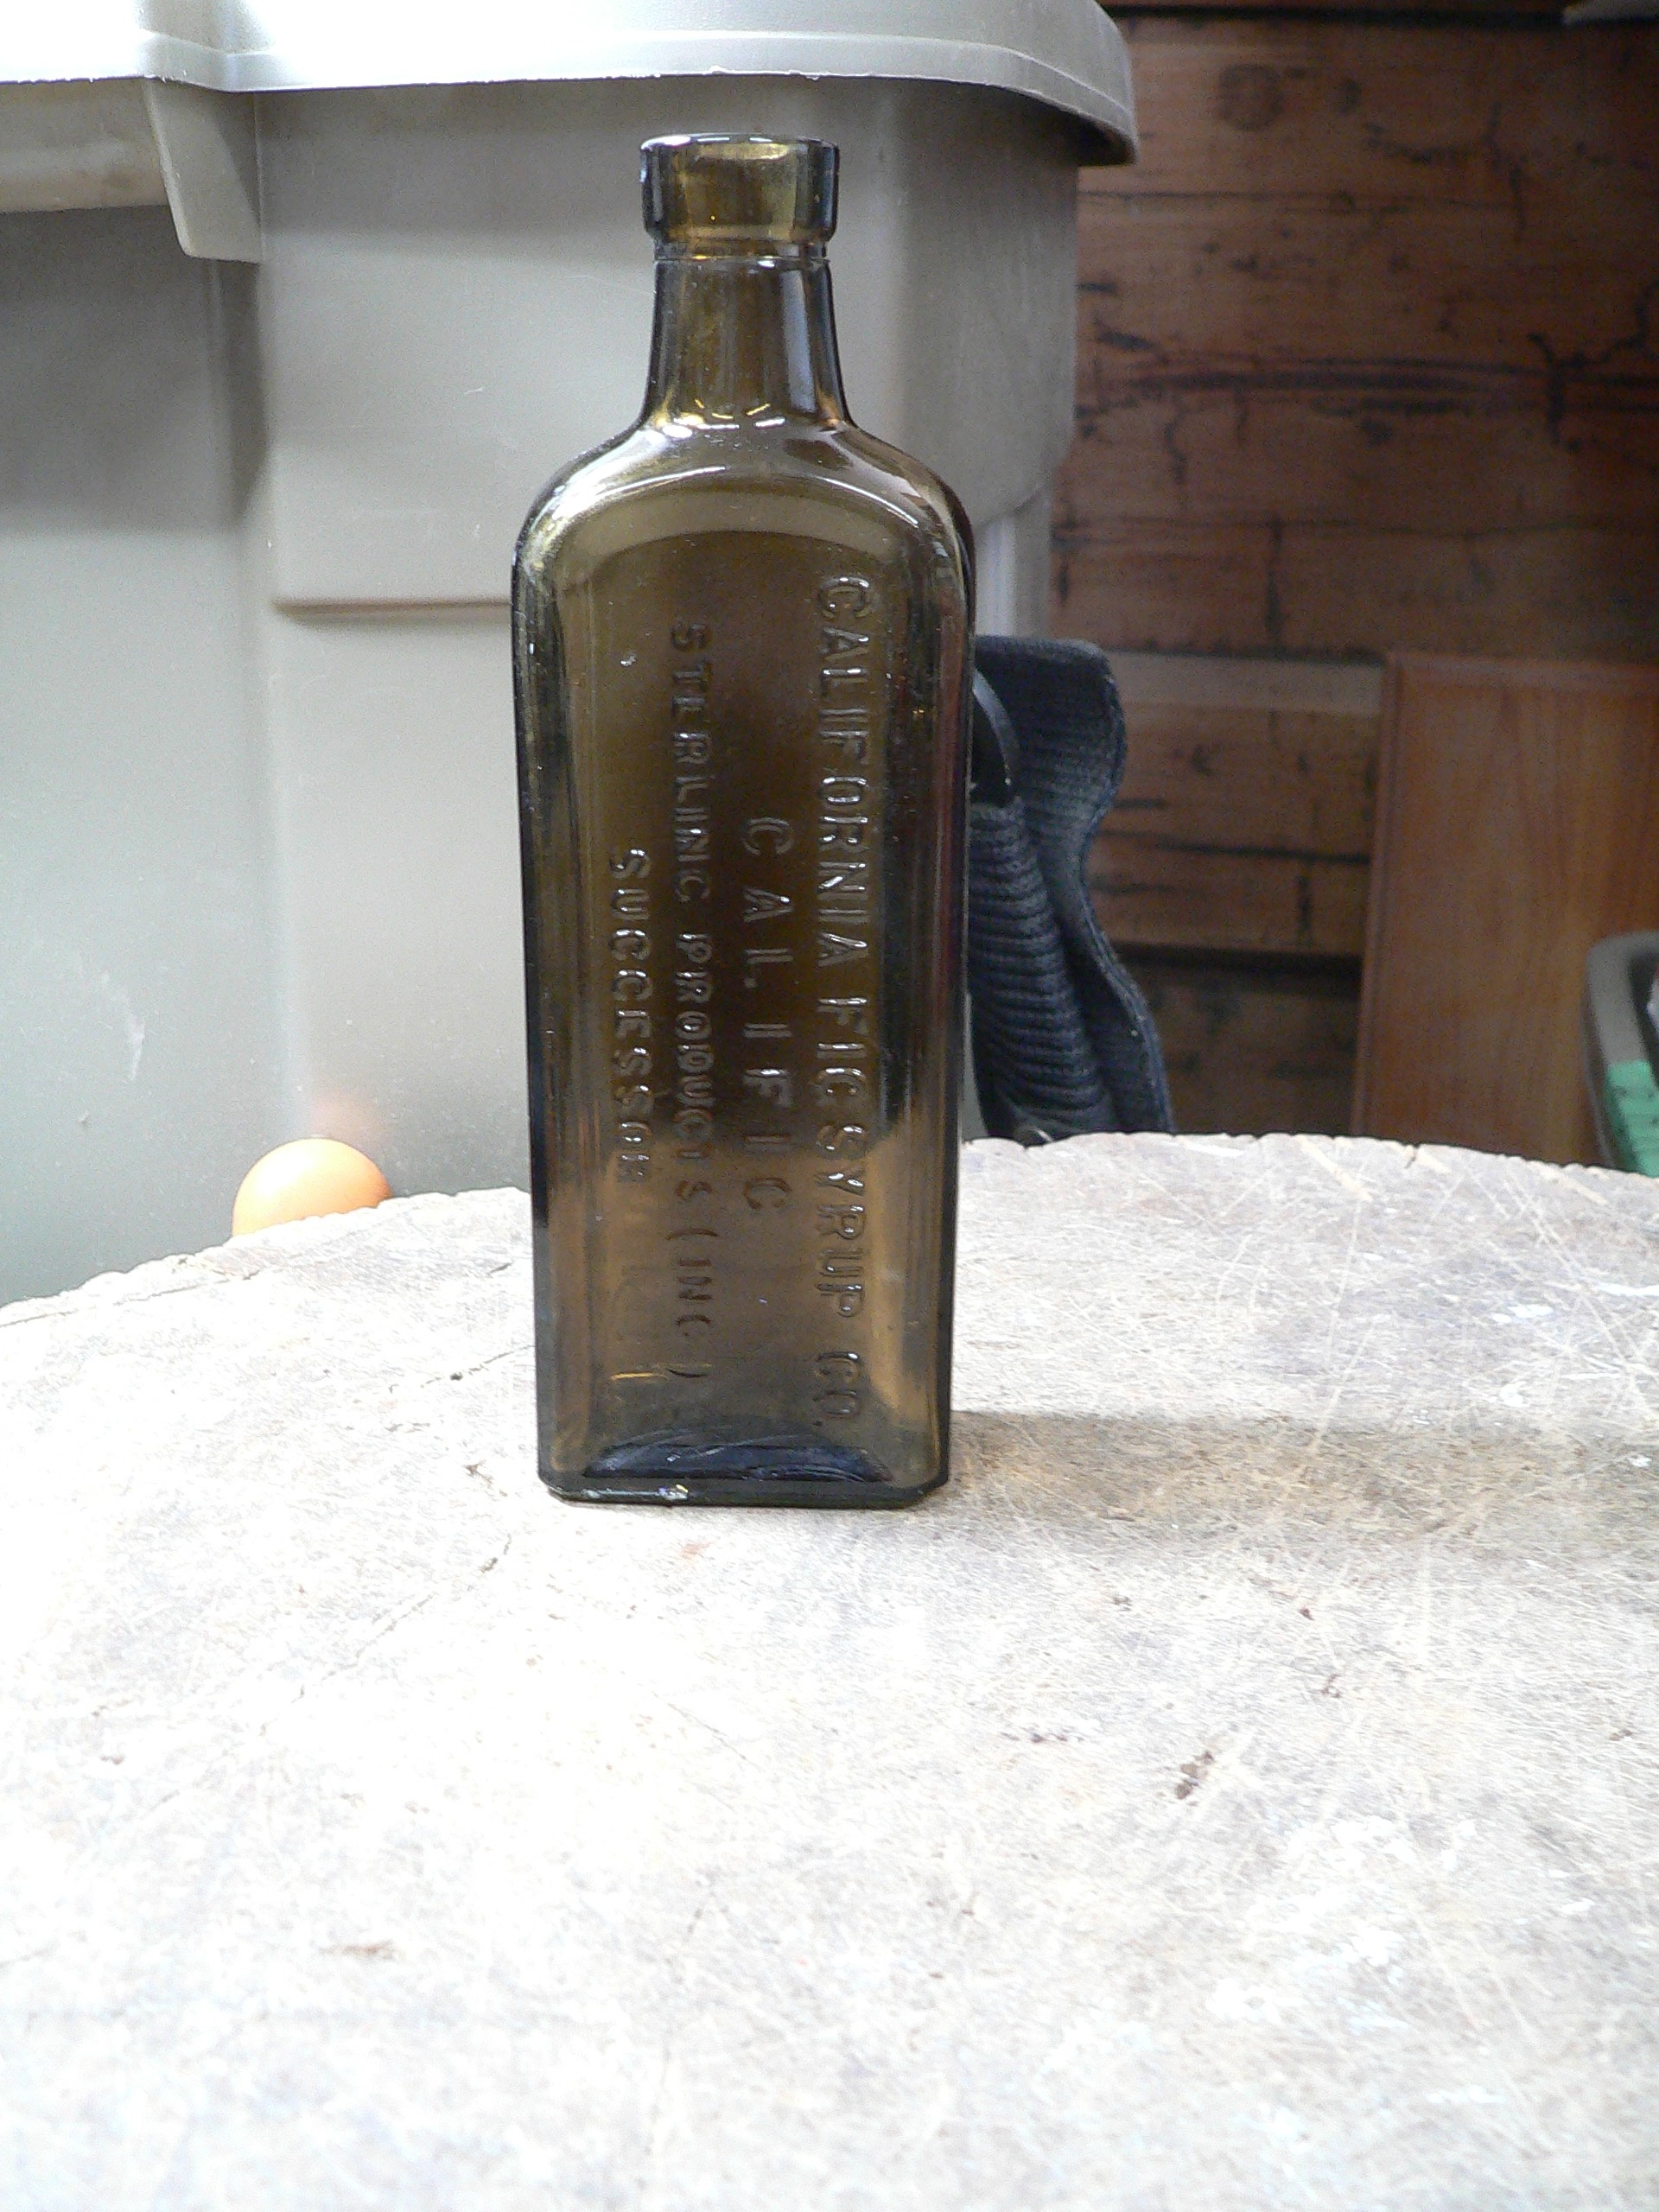 Bouteille antique médicament califormia syrup # 10550.1